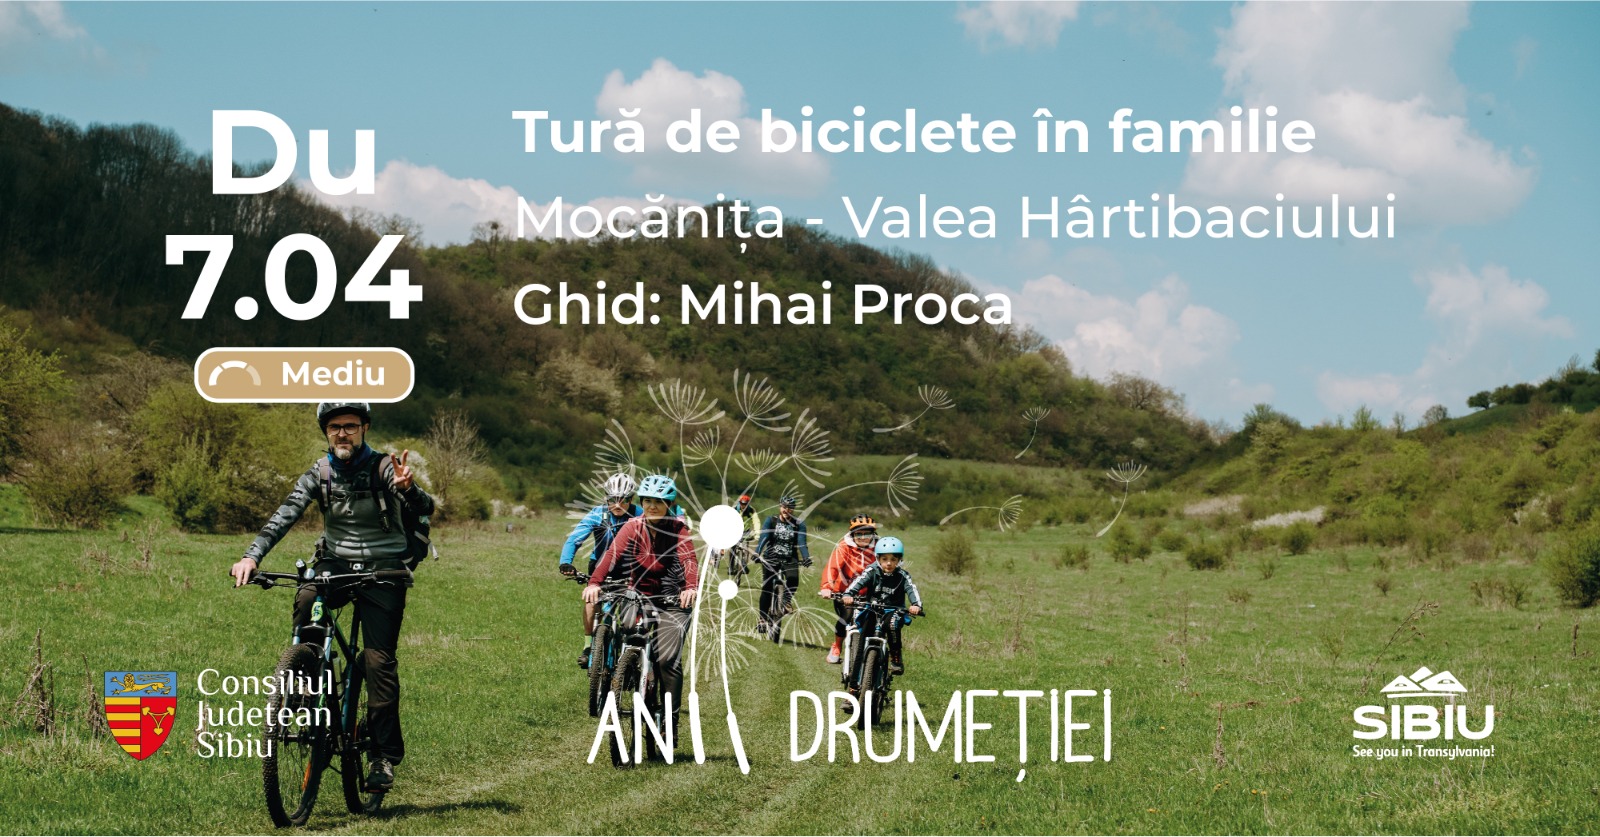 Tură de biciclete în familie pe traseul Mocănița - Valea Hârtibaciului